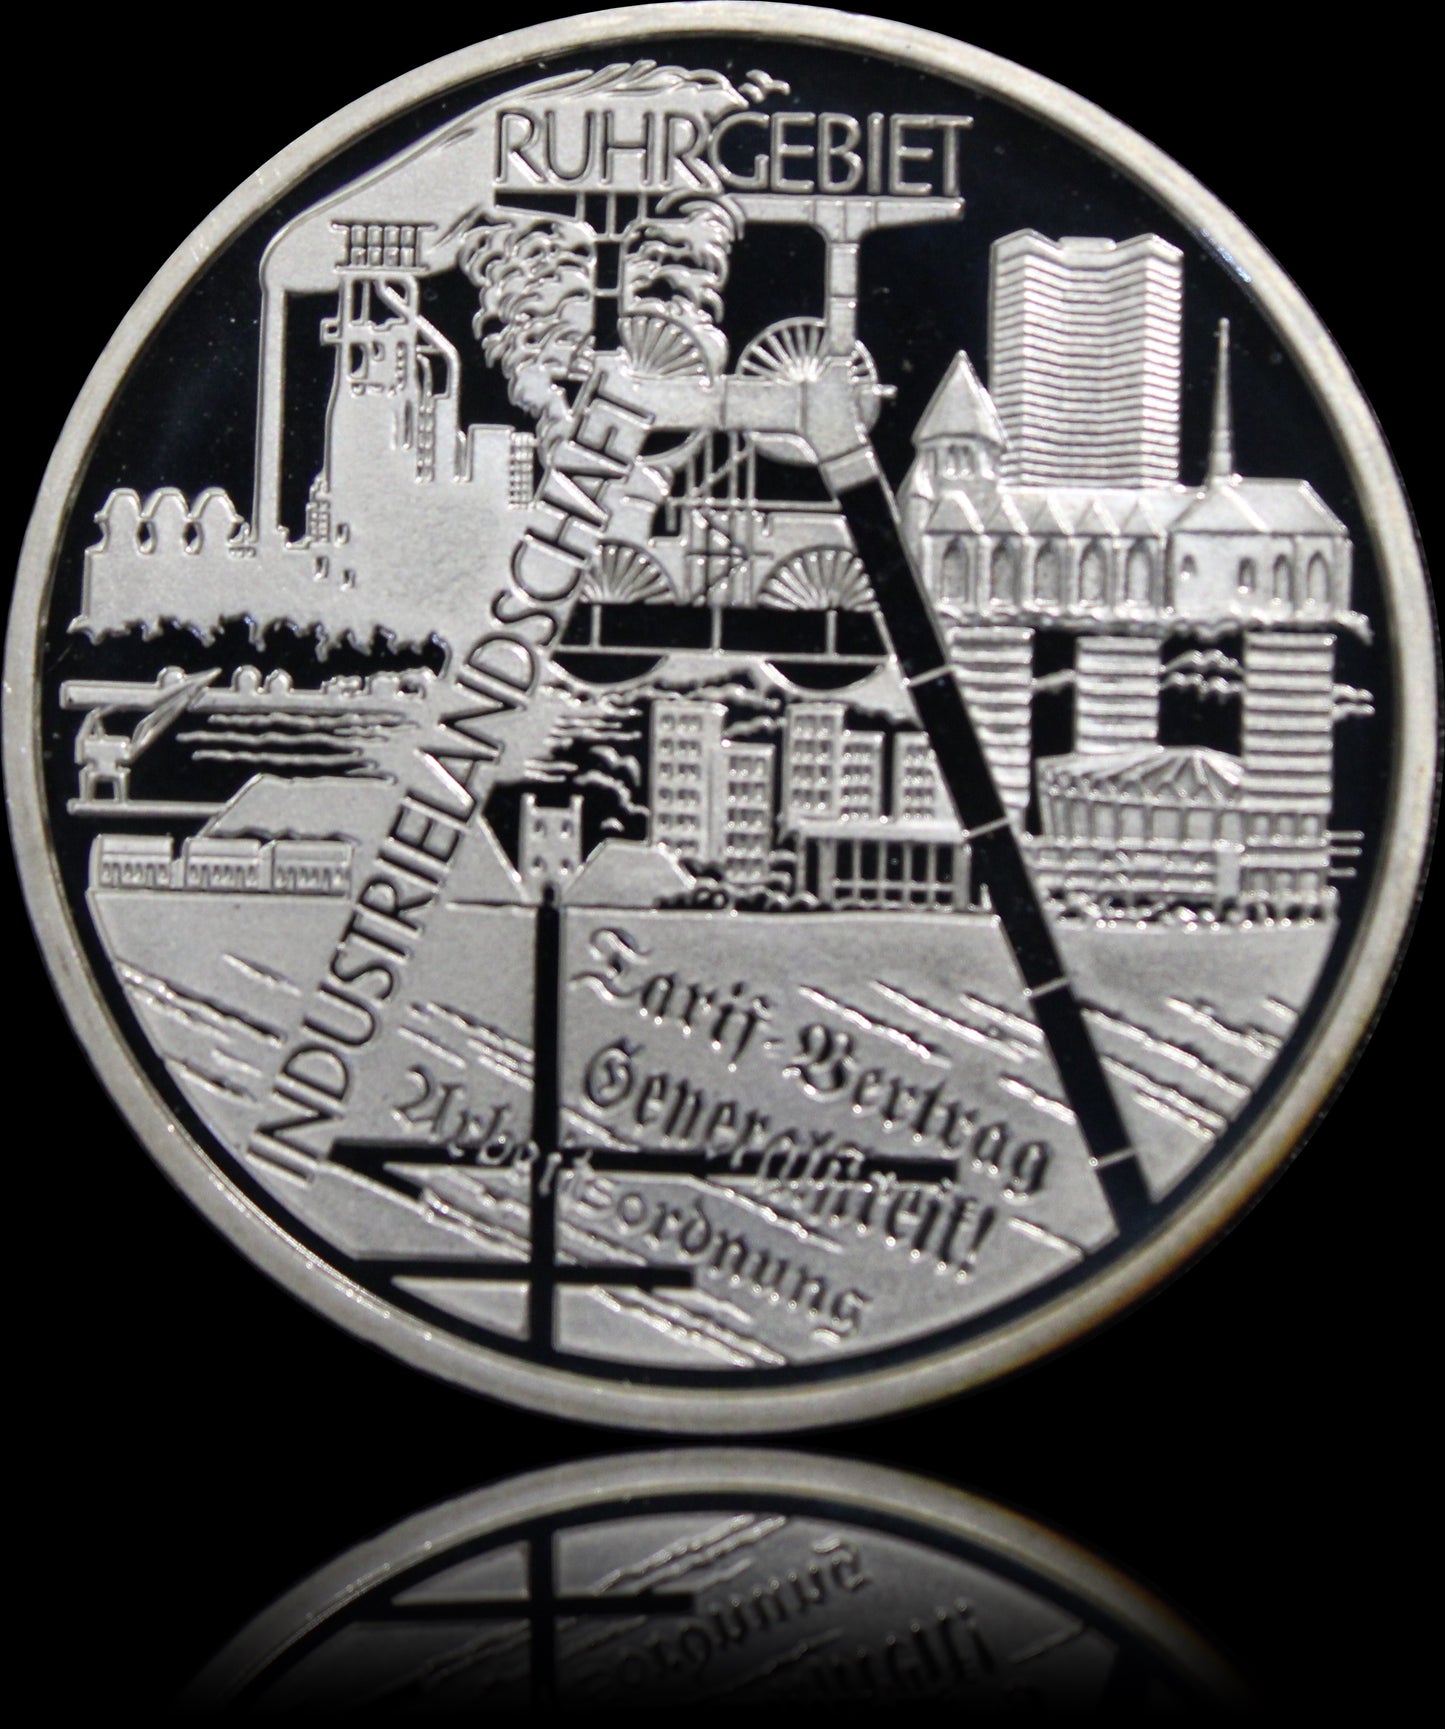 INDUSTRIELANDSCHAFT RUHRGEBIET, Serie 10 € Silber Gedenkmünzen Deutschland, Spiegelglanz, 2003